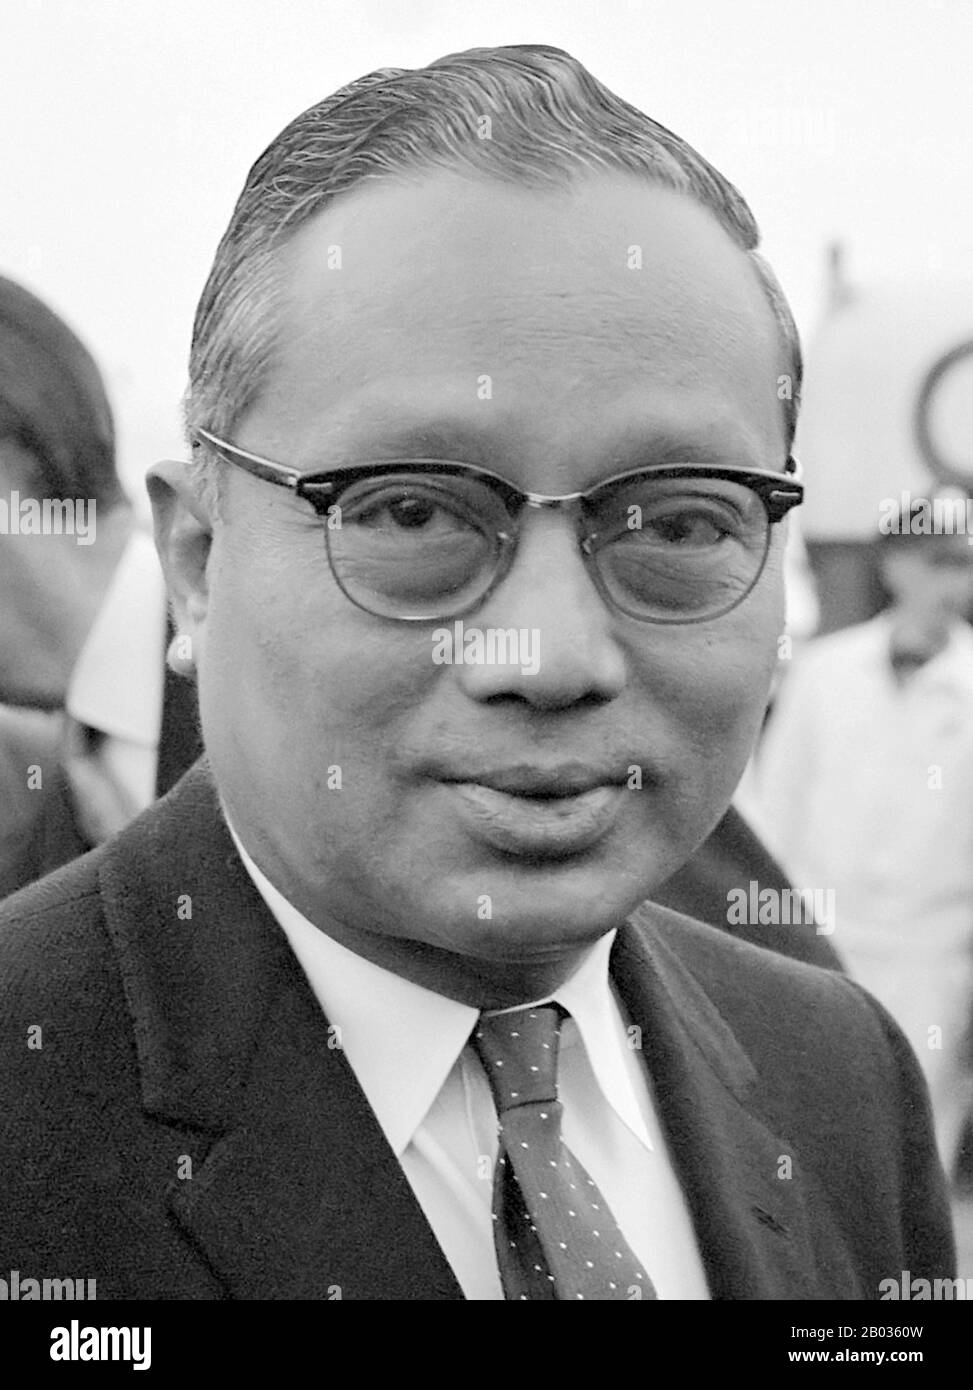 U Thant (New York, 22 gennaio 1909 – 25 novembre 1974) è stato un diplomatico birmano e terzo Segretario generale delle Nazioni Unite dal 1961 al 1971. Nativo di Pantanaw, Thant è stato istruito alla scuola superiore nazionale e all'università di Rangoon. Nei giorni del clima politico teso in Birmania, ha tenuto posizioni moderate che si posizionano tra ferventi nazionalisti e lealisti britannici. Fu un amico stretto del primo primo ministro birmano U Nu e dal 1948 al 1961 ha ricoperto diverse cariche nel gabinetto di Nu. Fu nominato segretario generale nel 1961 quando morì il suo predecessore, Dag Hammarskjöld Foto Stock